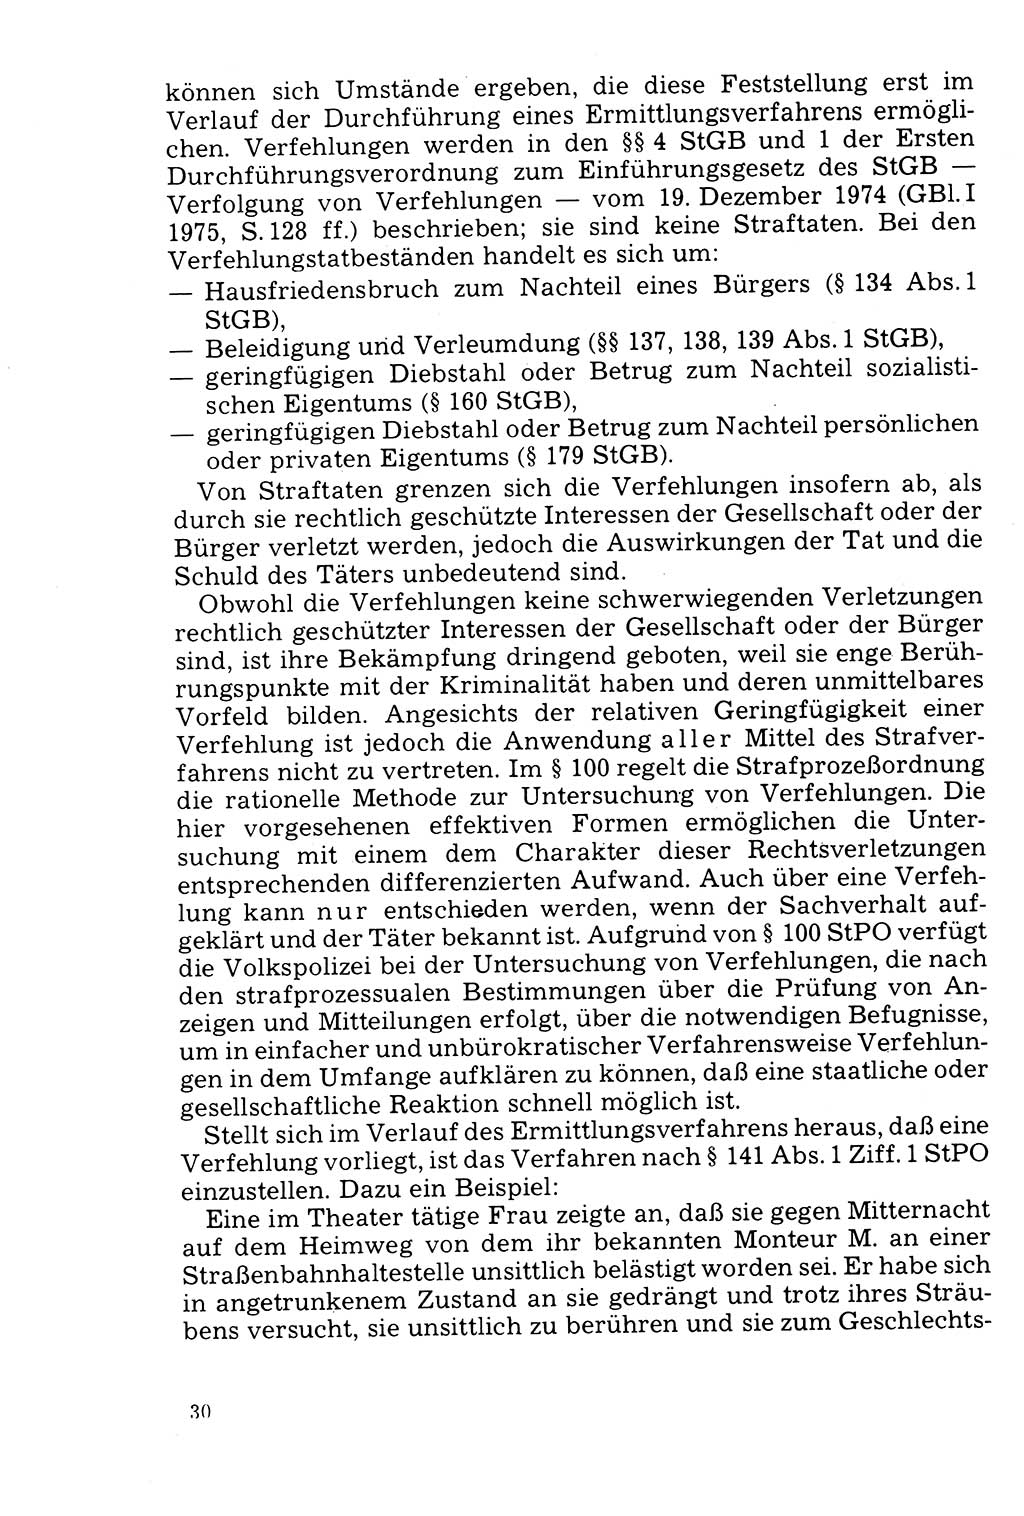 Der Abschluß des Ermittlungsverfahrens [Deutsche Demokratische Republik (DDR)] 1978, Seite 30 (Abschl. EV DDR 1978, S. 30)